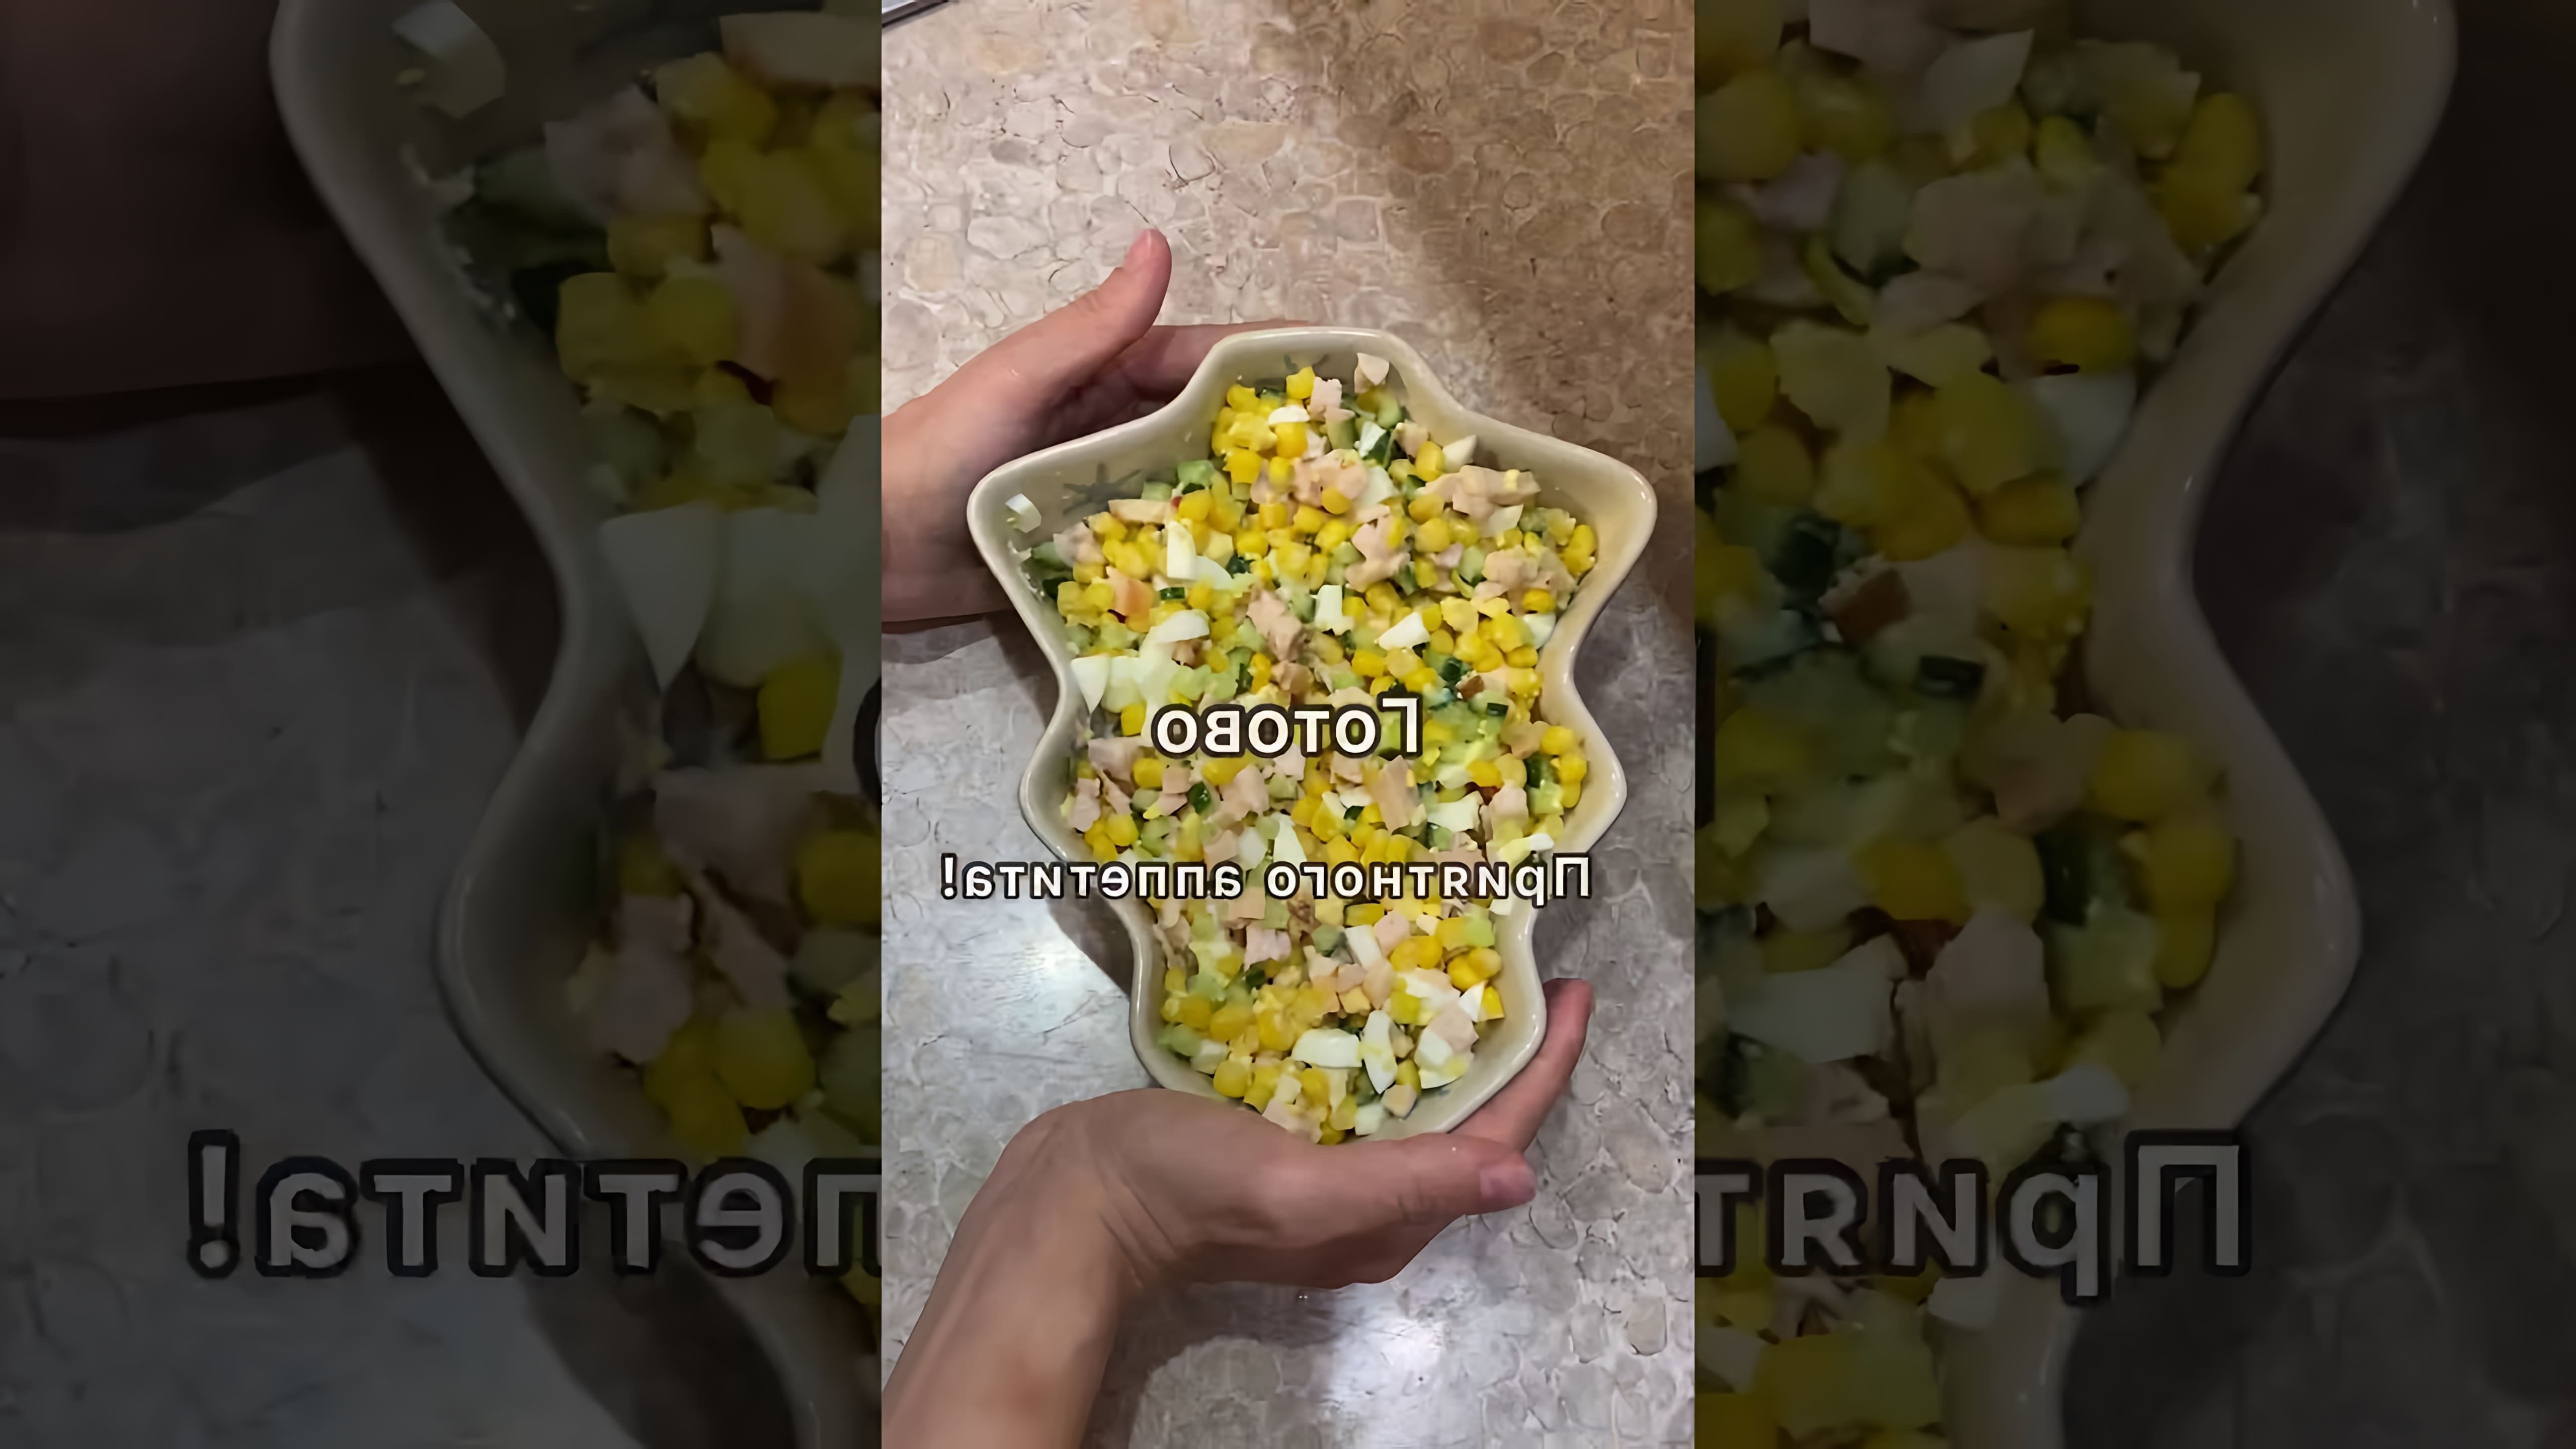 Вкусный салат с копченой курицей - это видео-ролик, который демонстрирует процесс приготовления салата с использованием копченой курицы